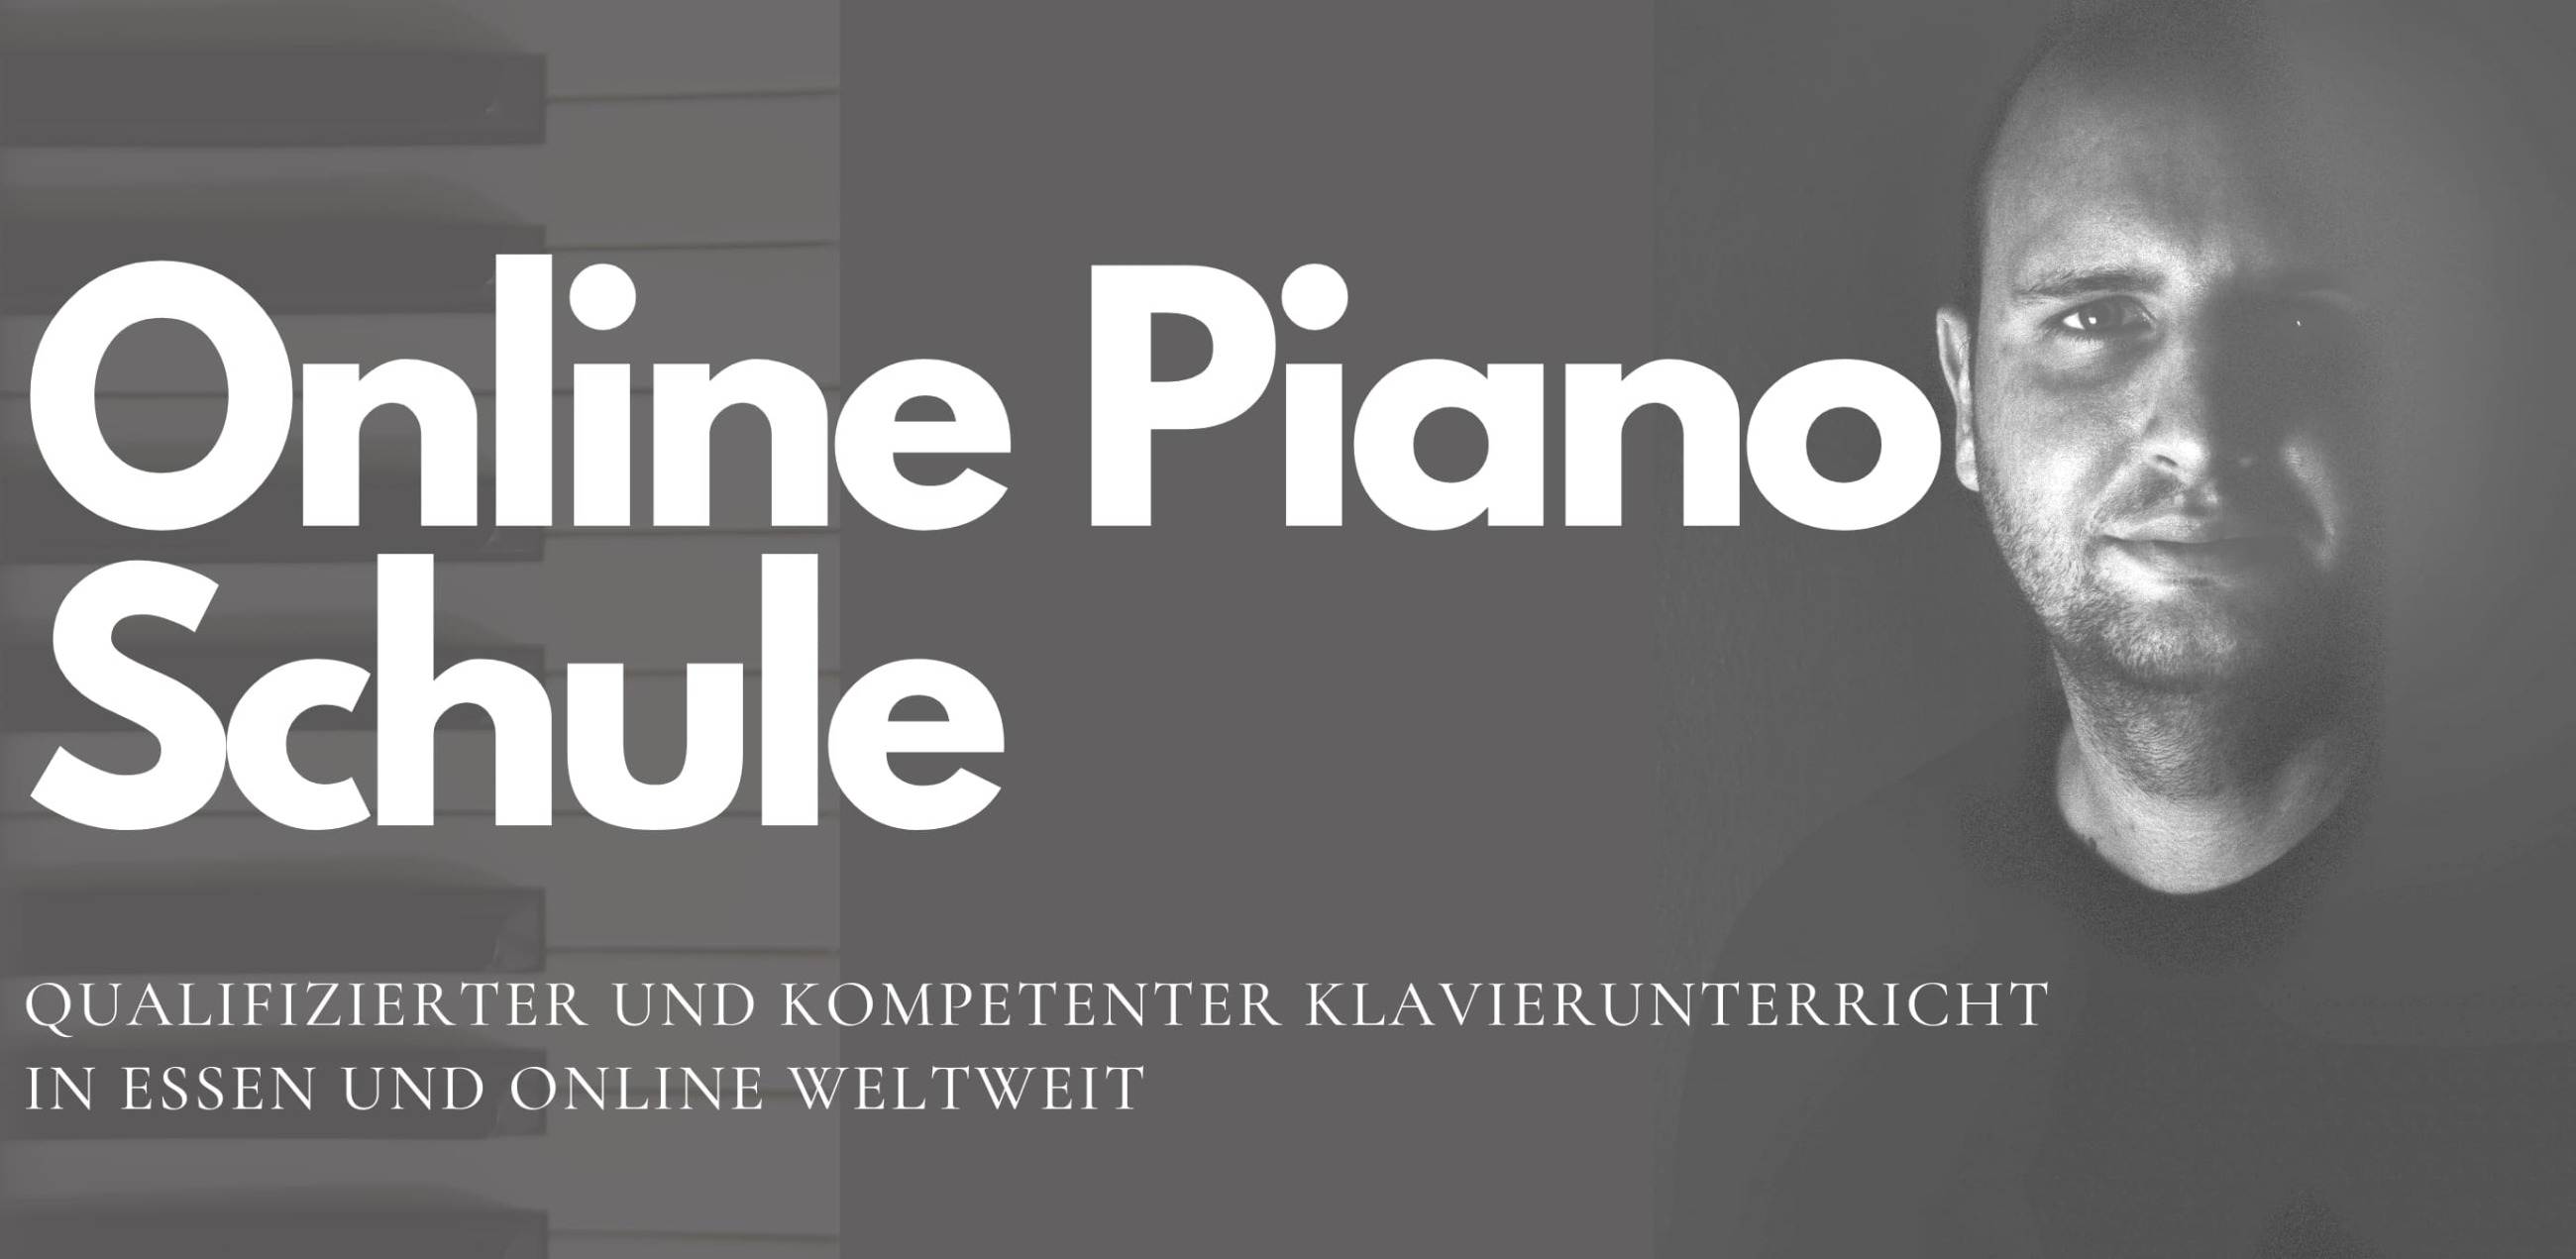 Online Piano Schule - Qualifizierter und kompetenter Klavierunterricht in Essen und online weltweit